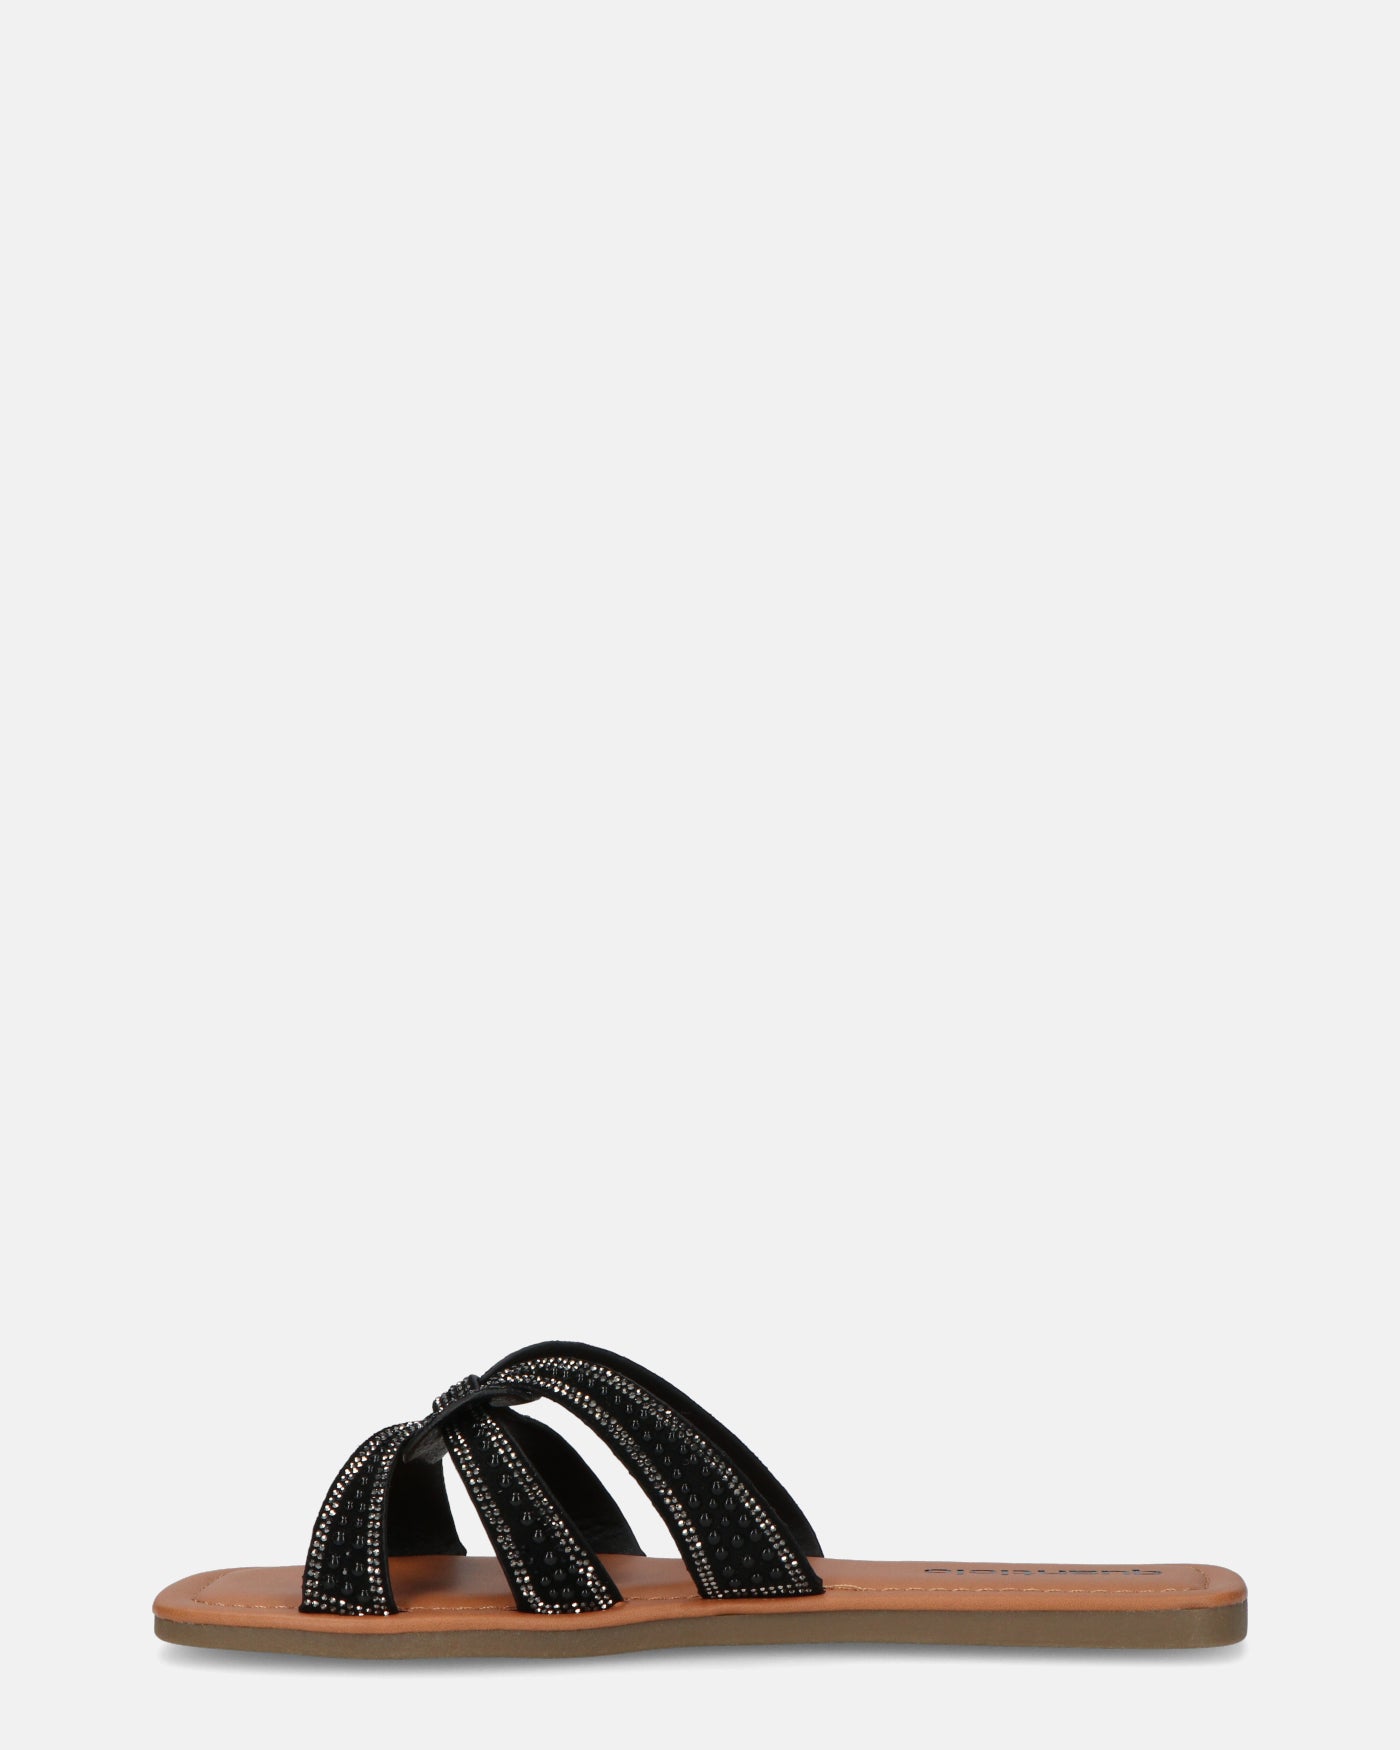 NURY - sandalias planas con rayas negras y pedrería